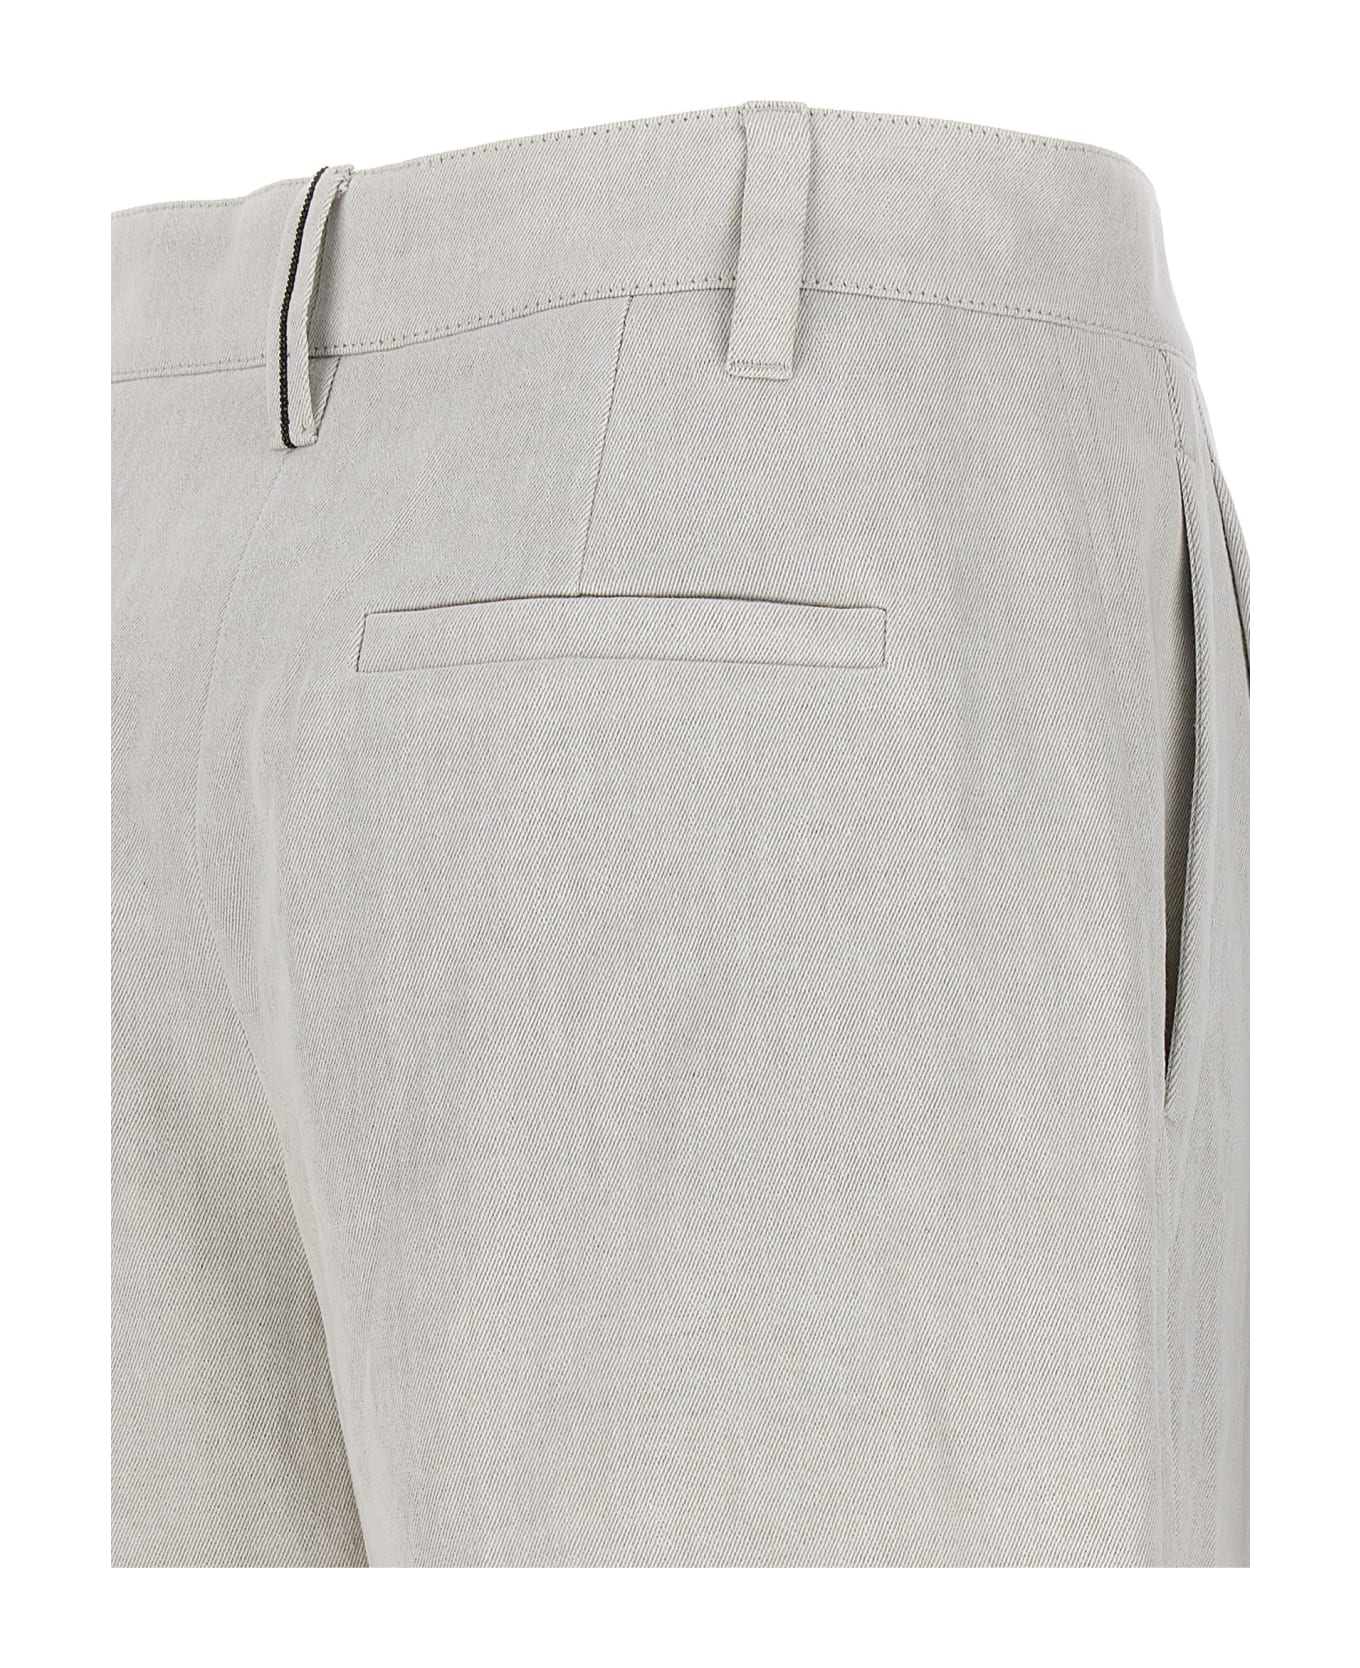 Brunello Cucinelli Pleated Bermuda Shorts - Gray